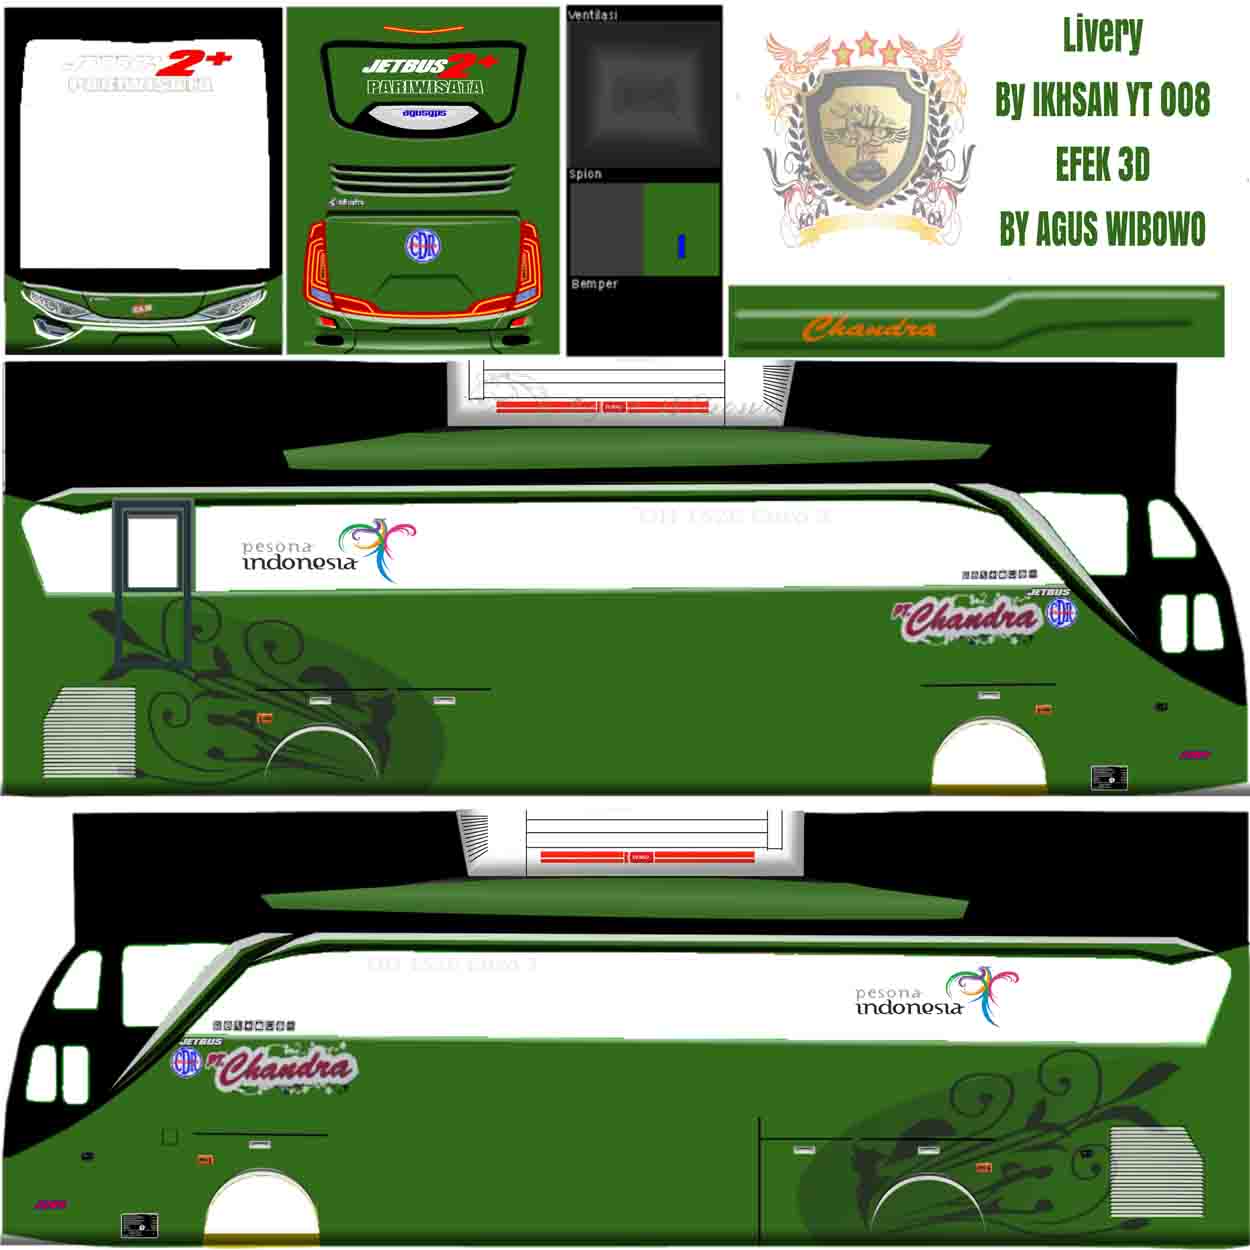 livery bus chandra shd